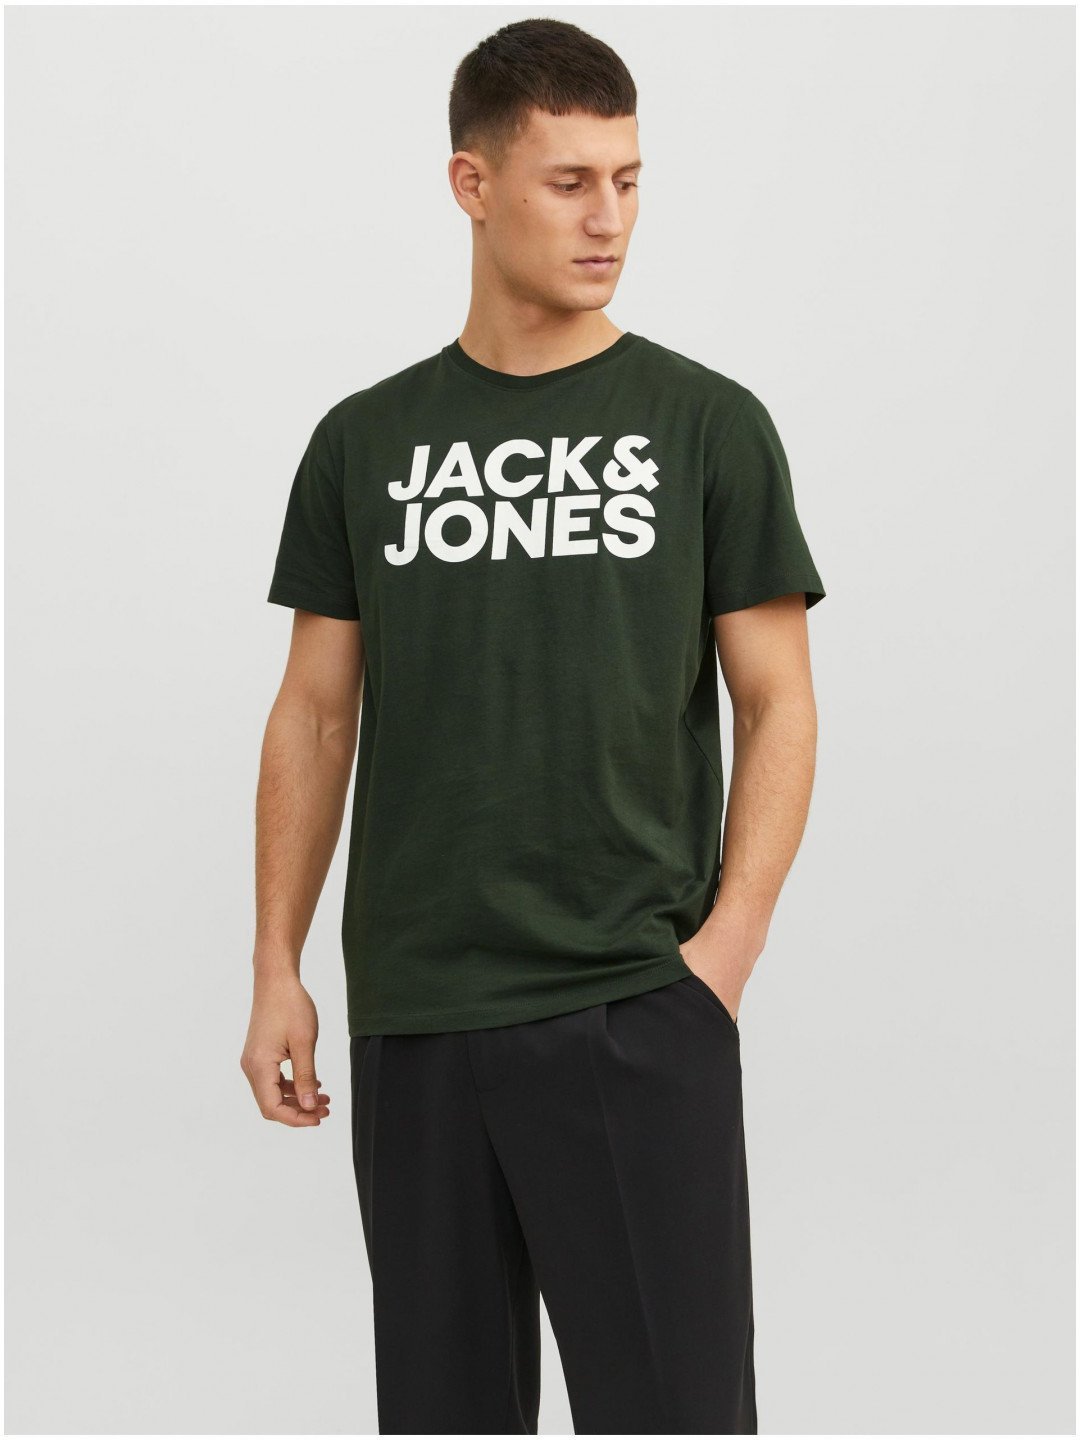 Tmavě zelené pánské tričko Jack & Jones Corp